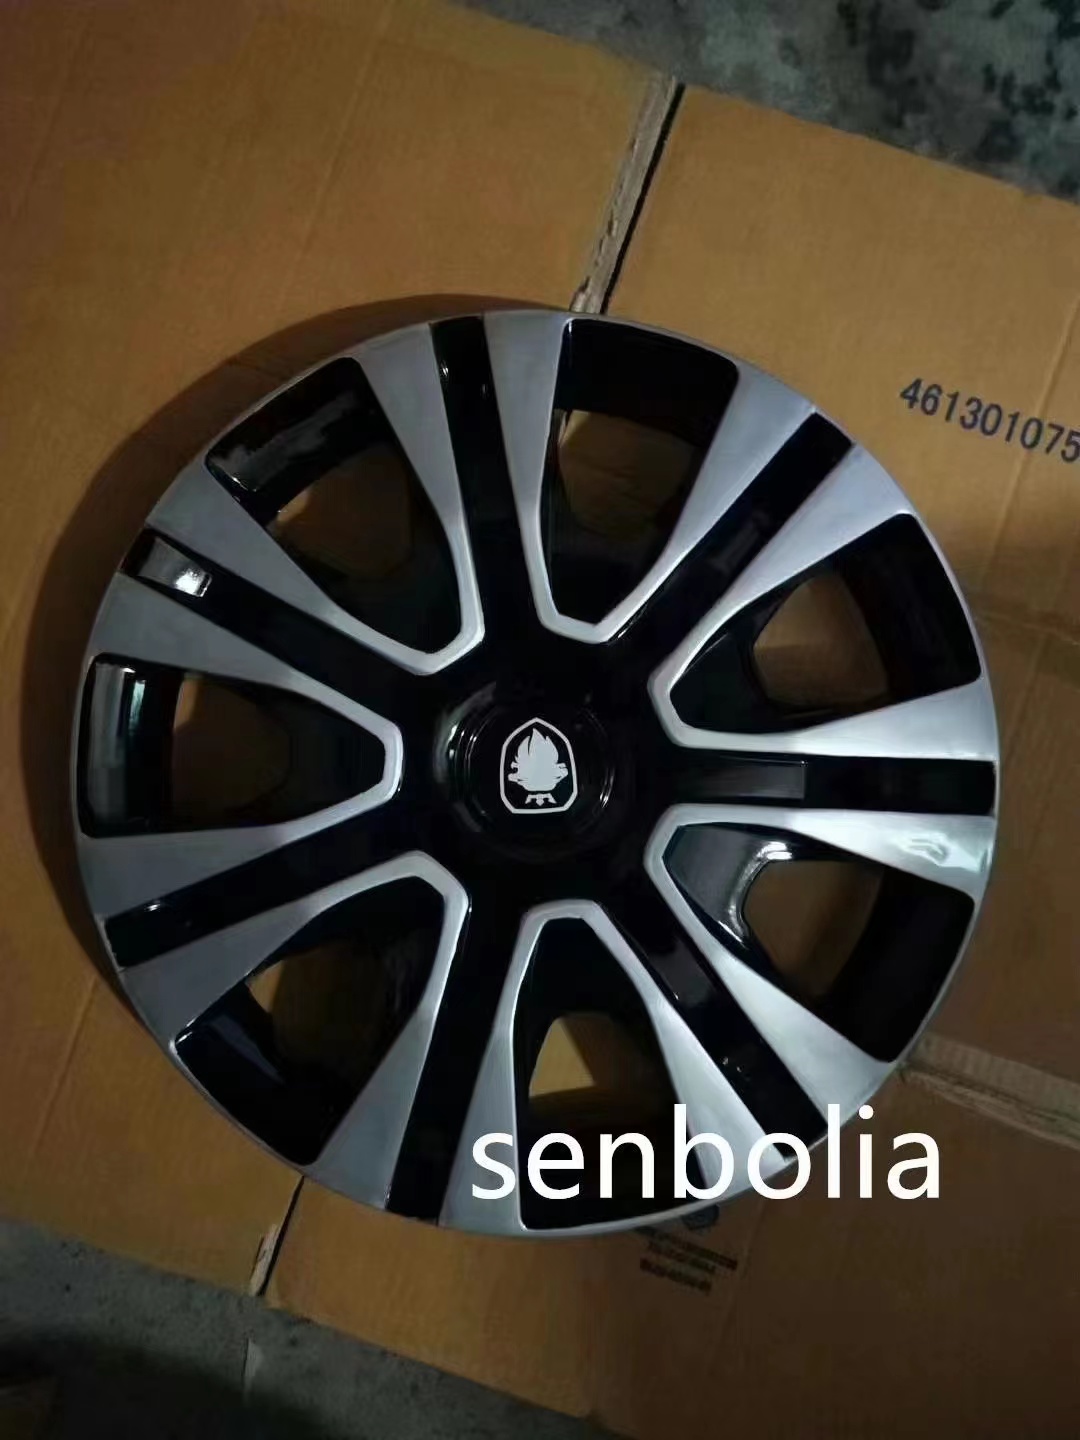 senbolia-LGG-2 汽车轮毂盖尺码多颜色款多  厂家直销欢迎前来采购汽车用品图